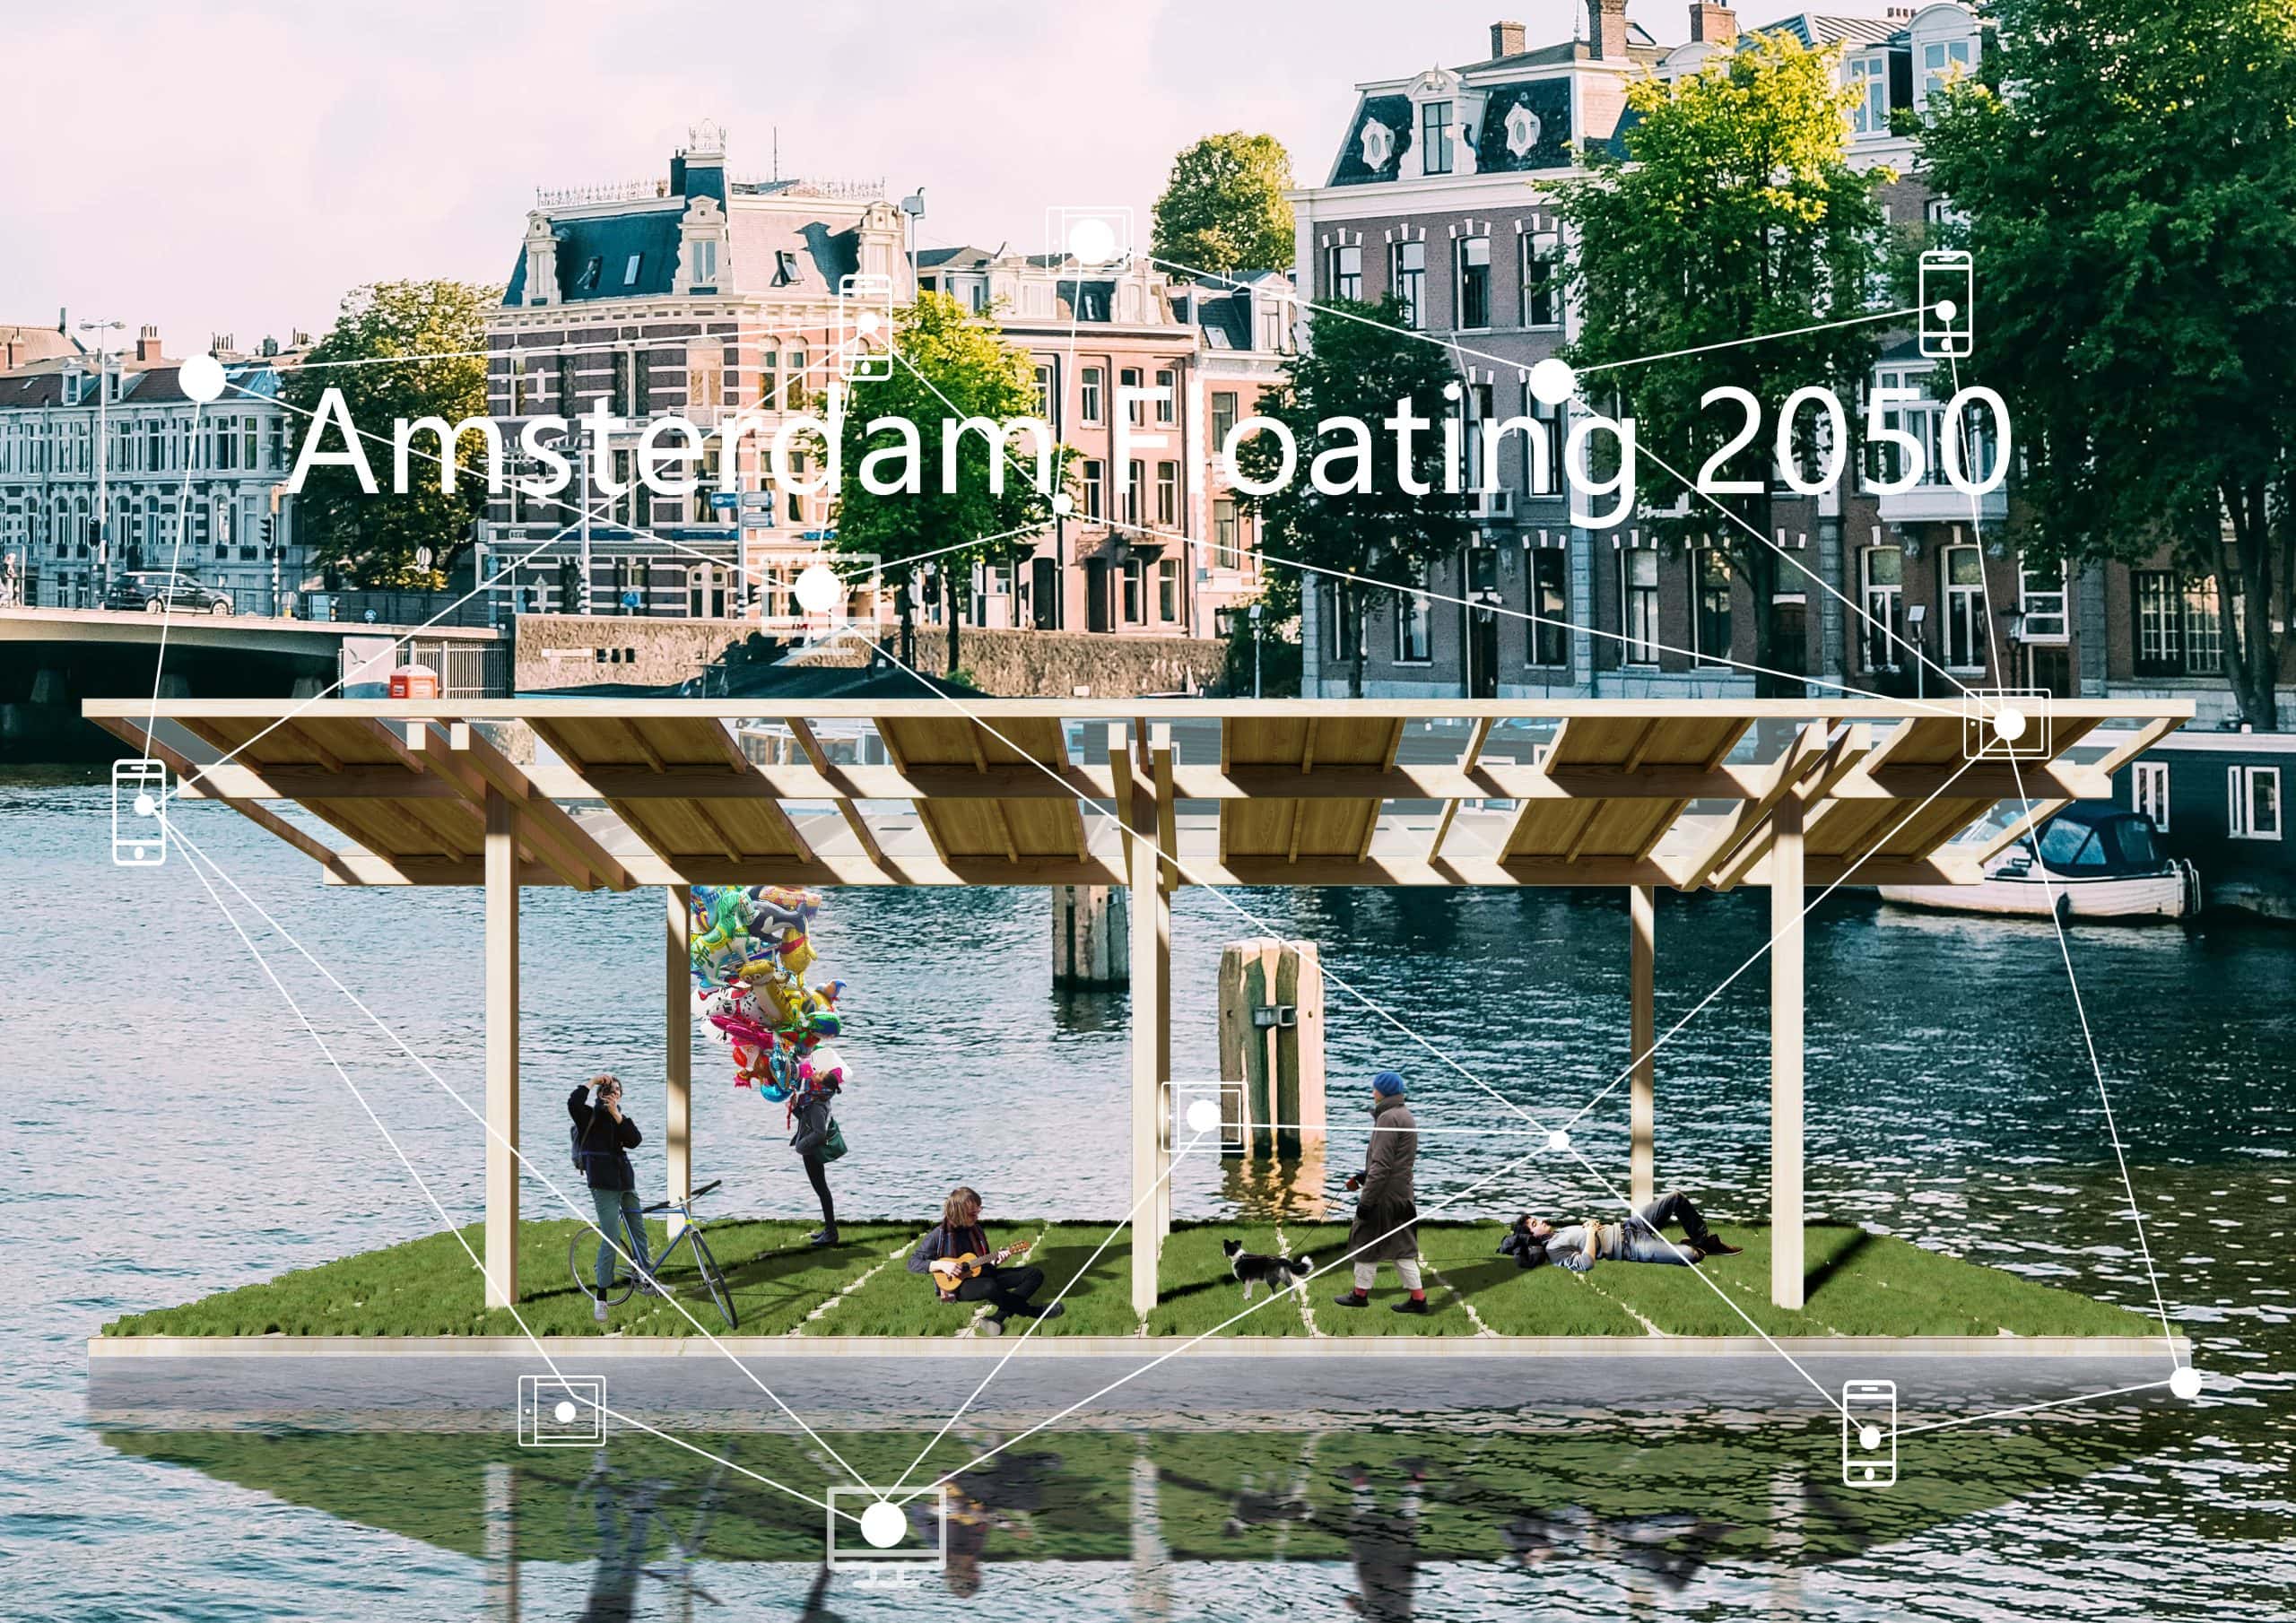 32373_ Amsterdam Floating 2050_Image01